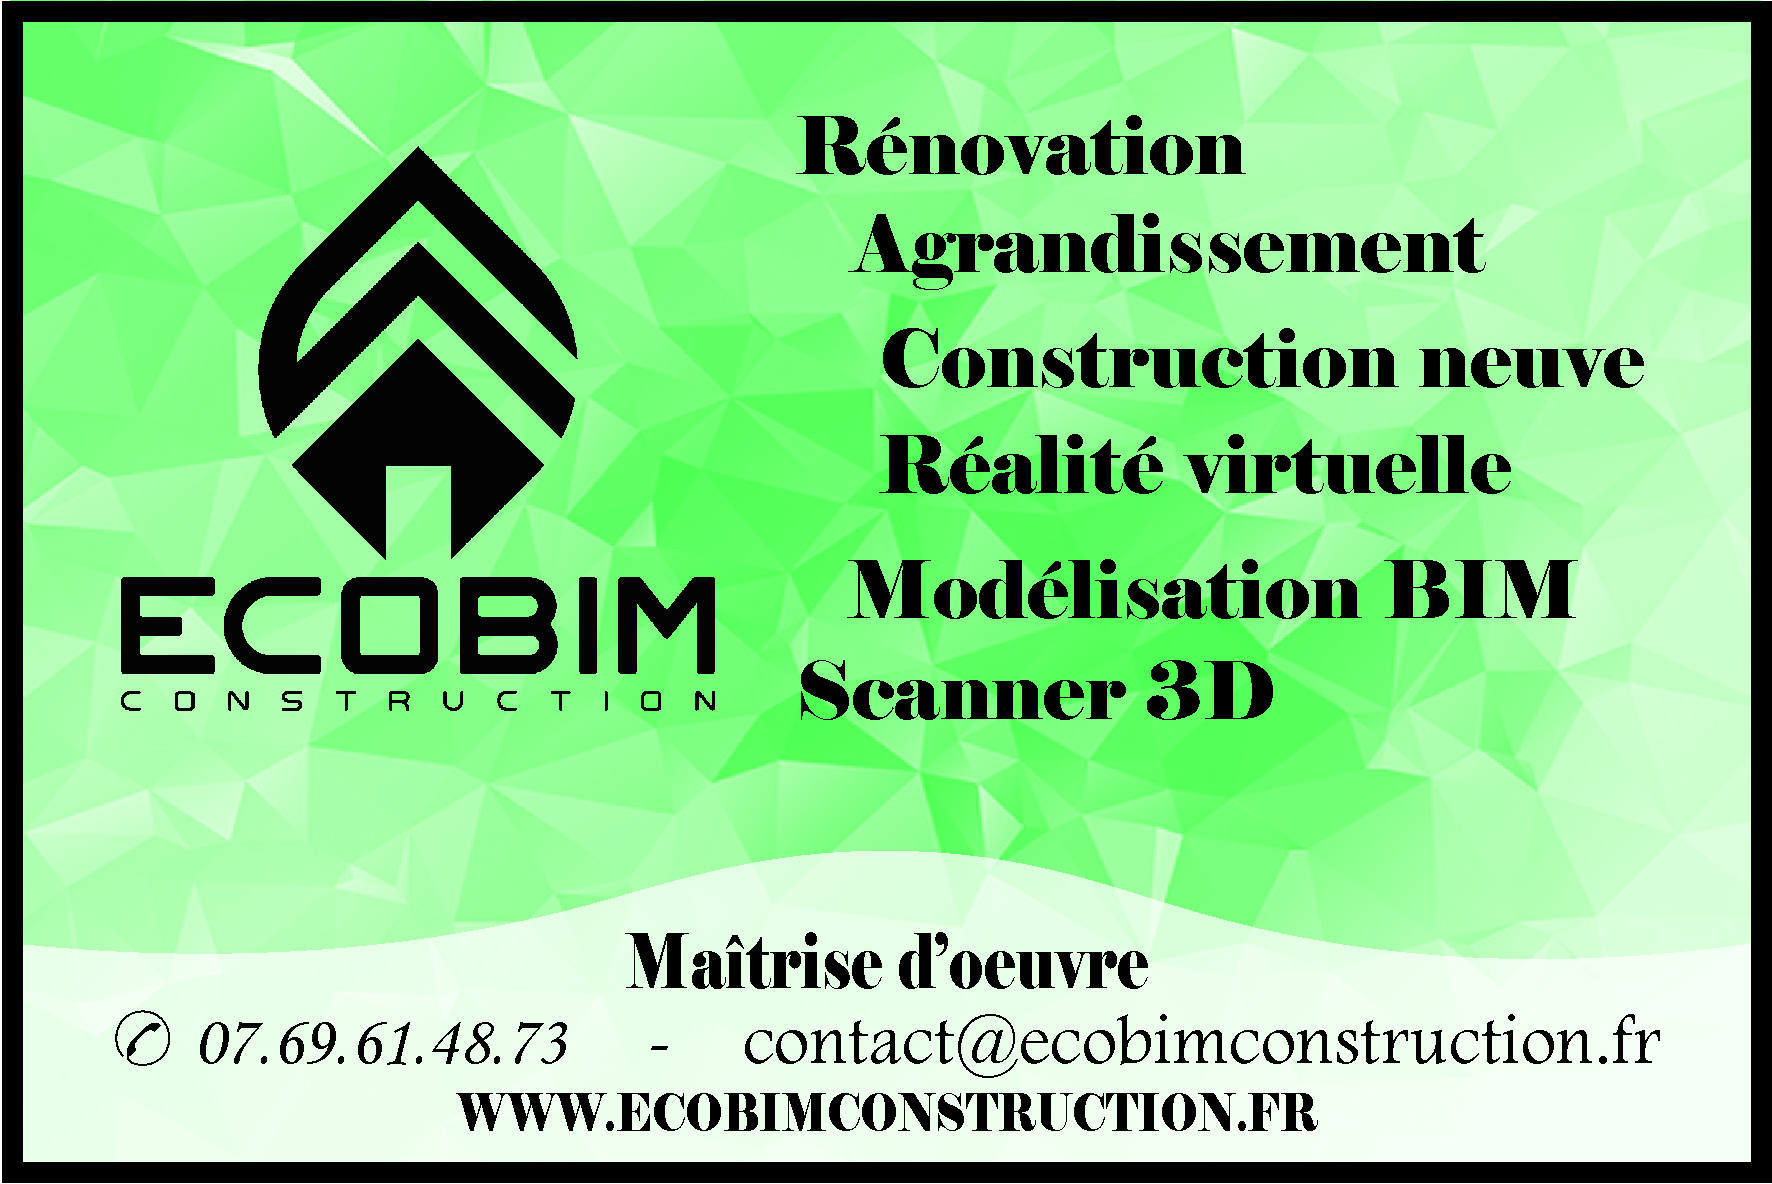 Lire la suite à propos de l’article EcoBIM CONSTRUCTION